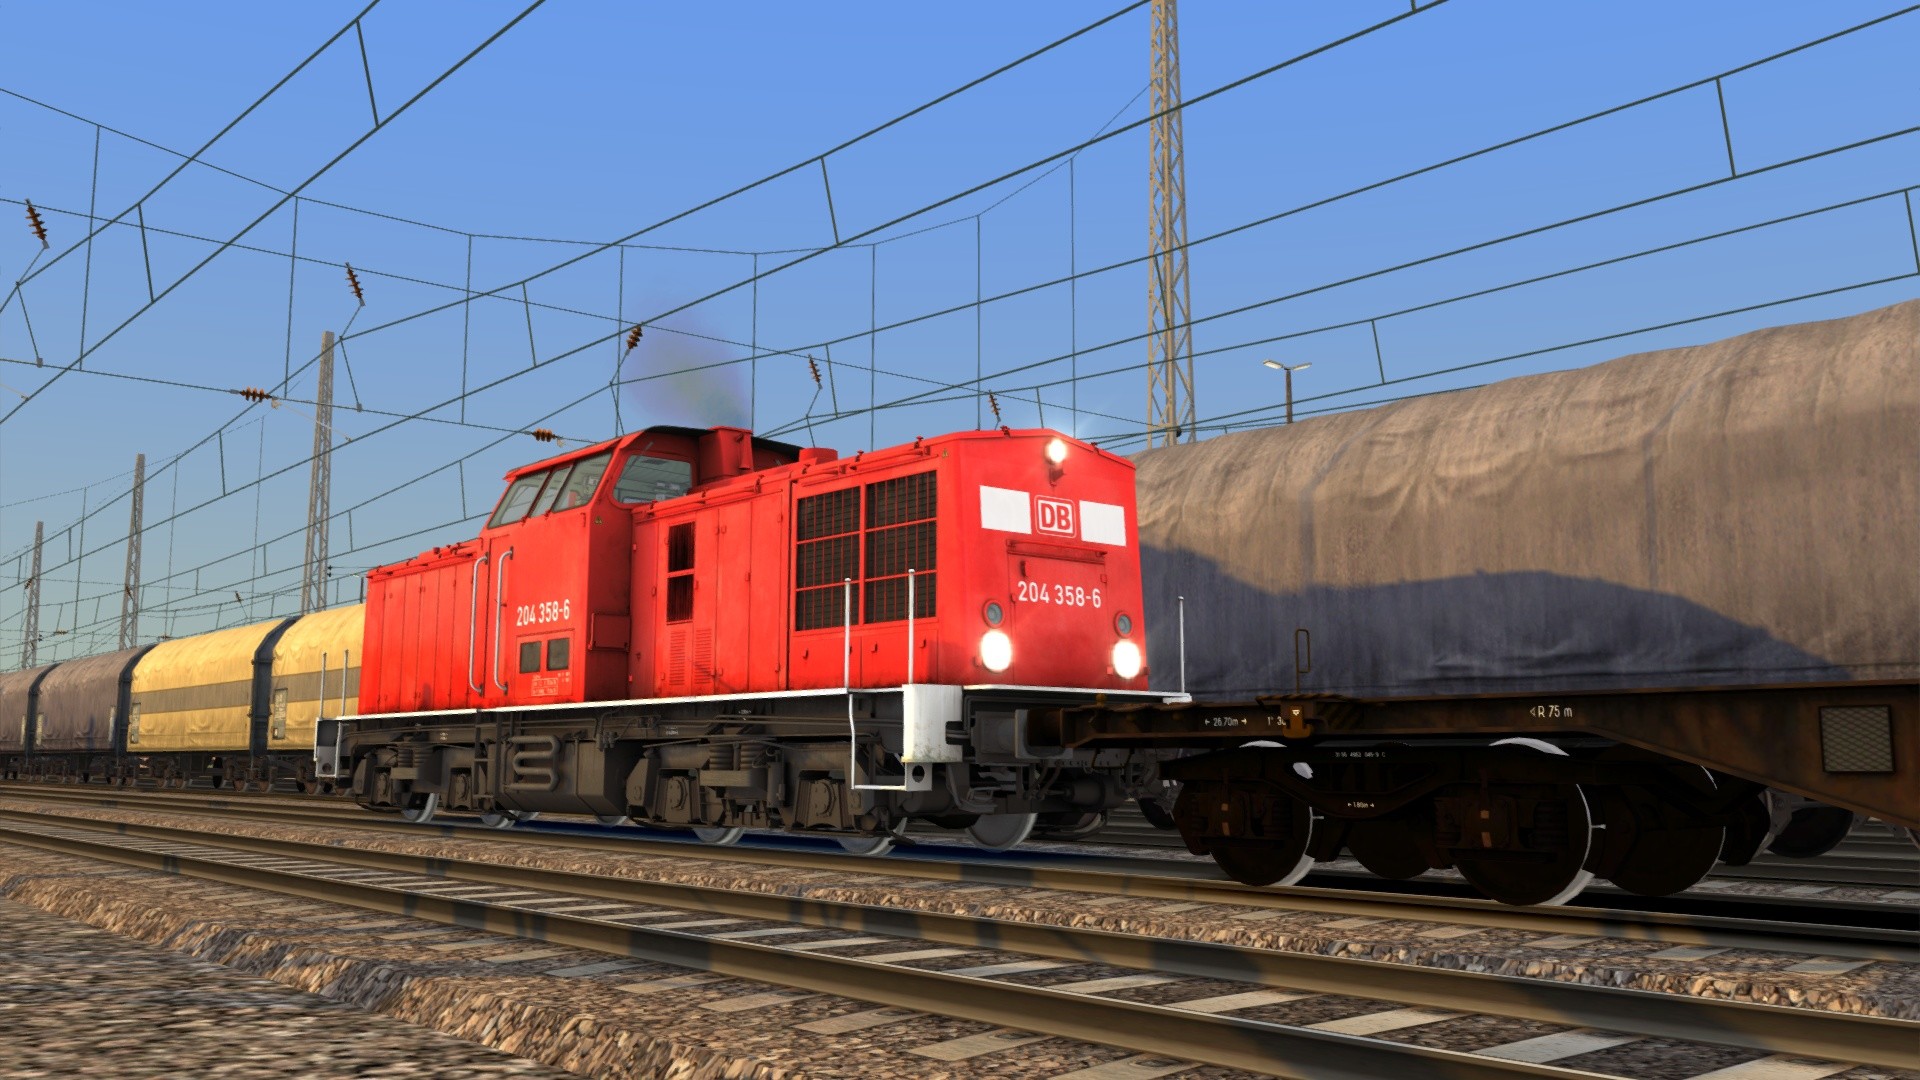 Train Simulator - DB BR 204 Loco Add-On DLC Steam CD Key $0.9